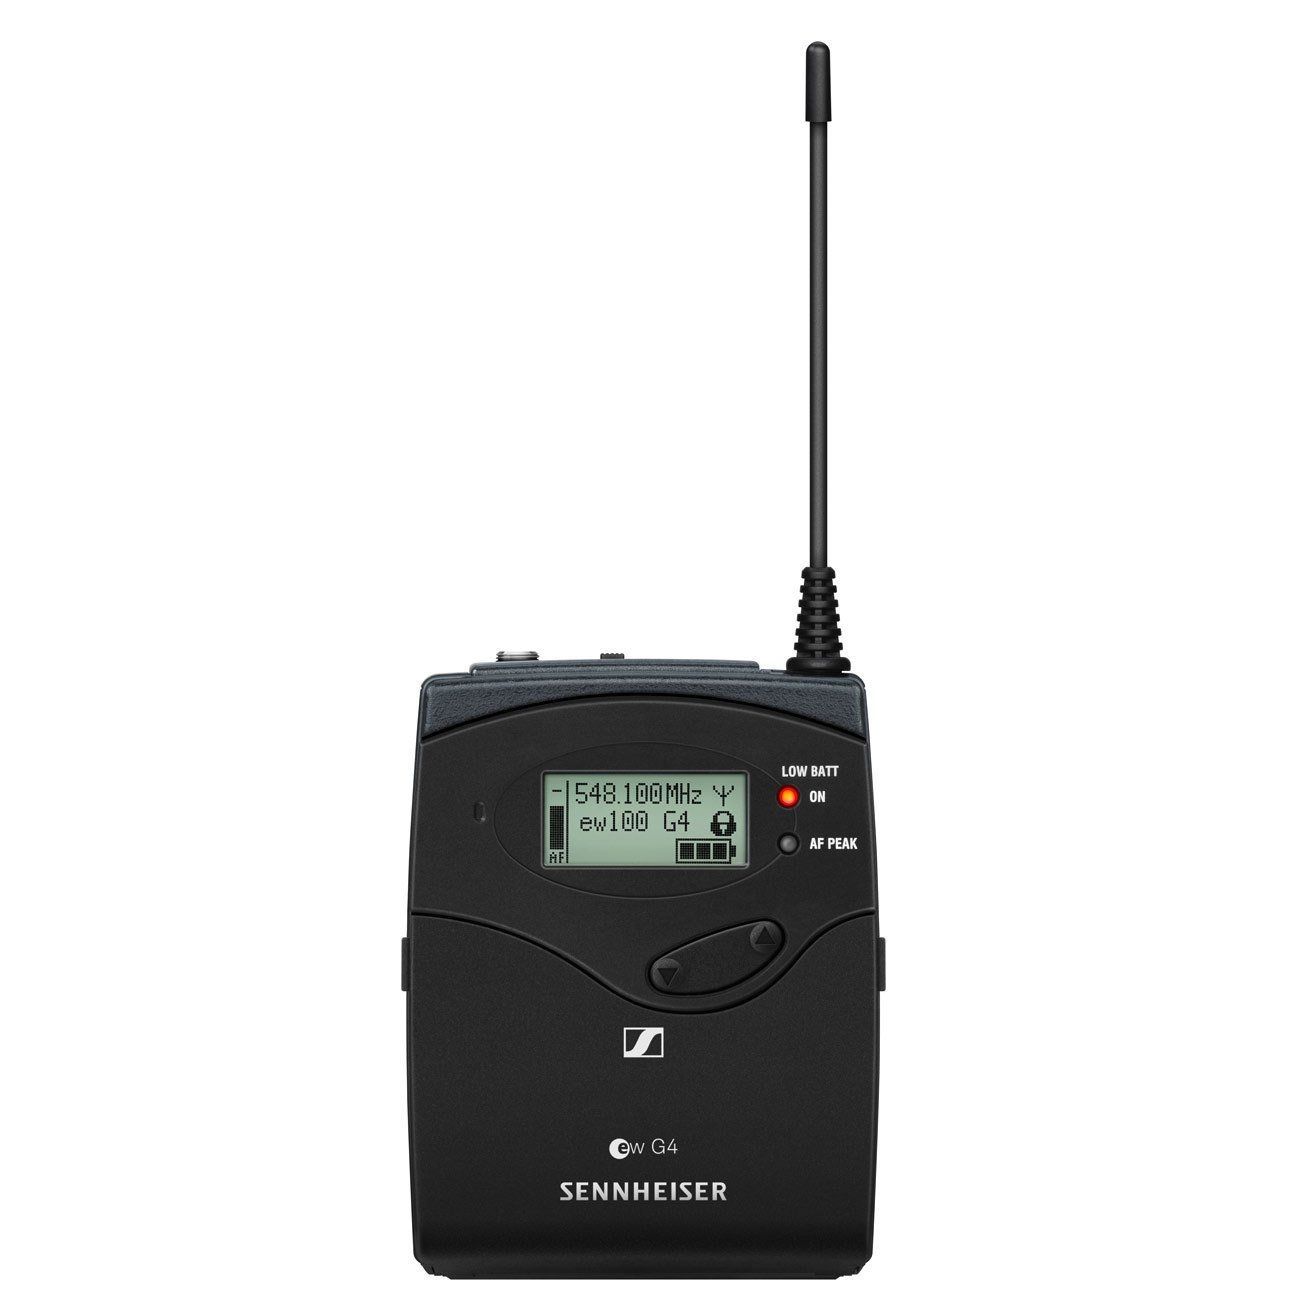 Sennheiser SK 100 G4 A1-Band Taschensender für ew-100 Wireless-Systeme